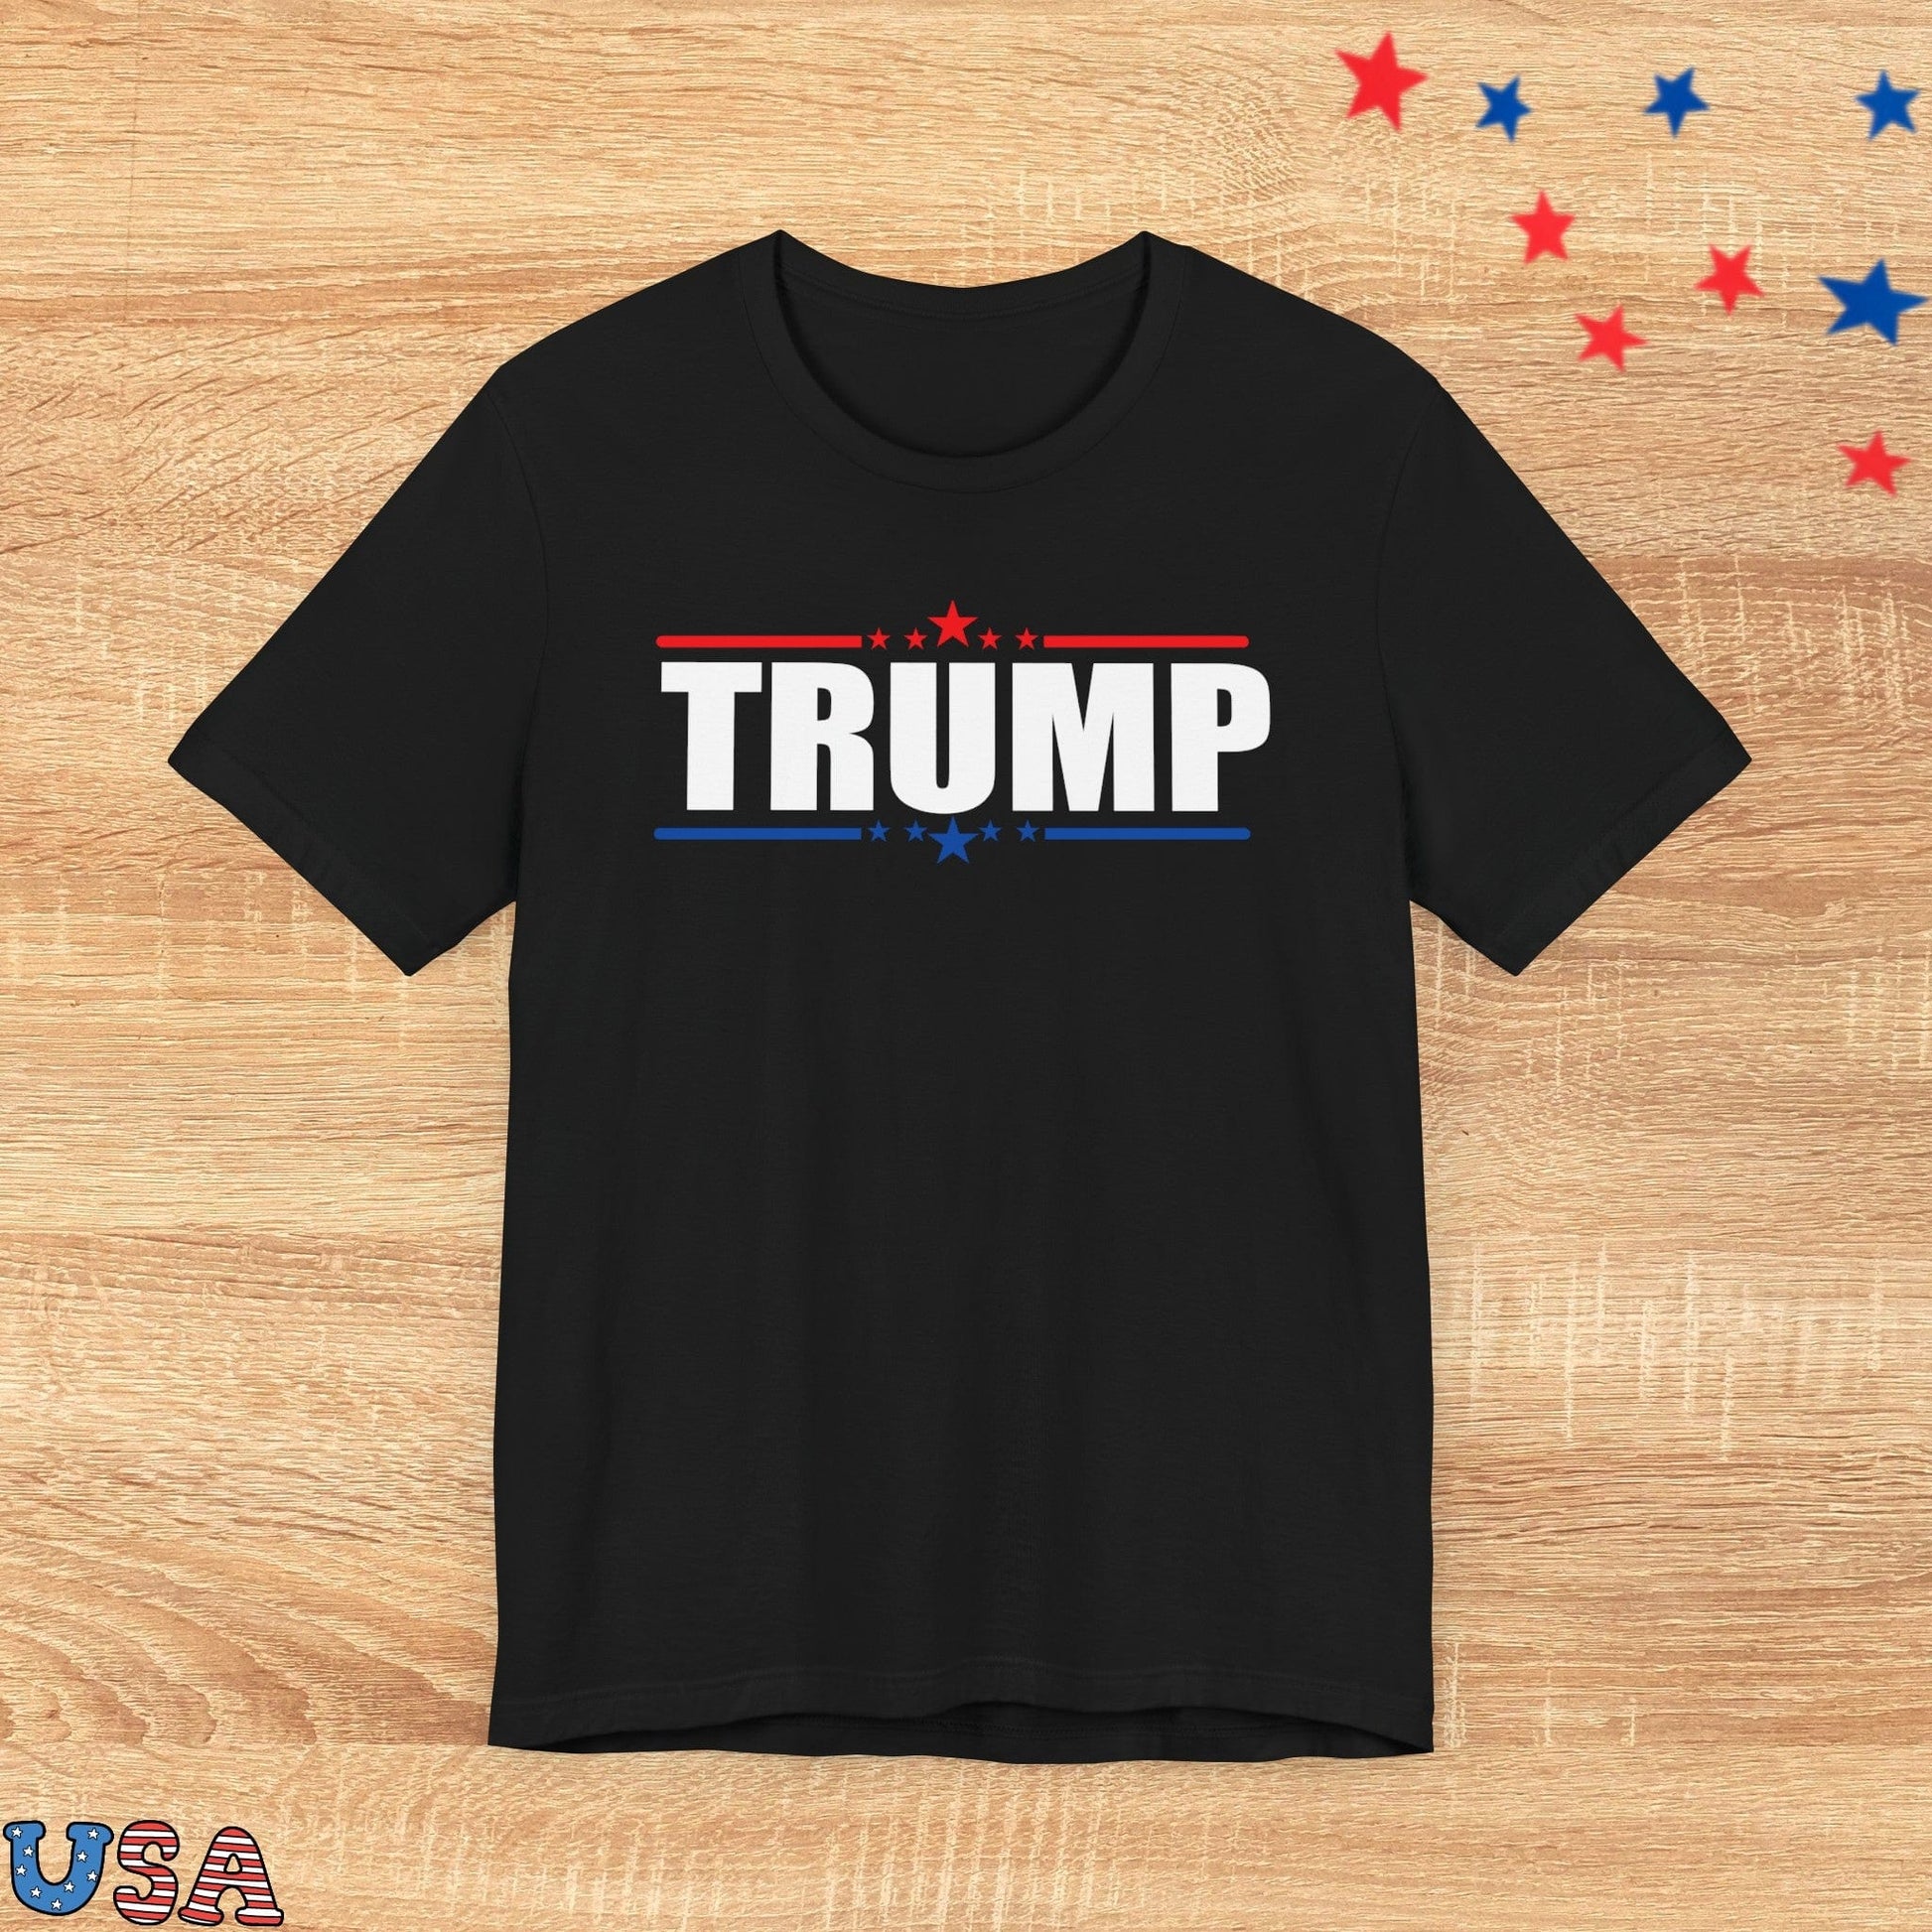 patriotic stars T-Shirt Black / XS Trump With Red & Blue Stars